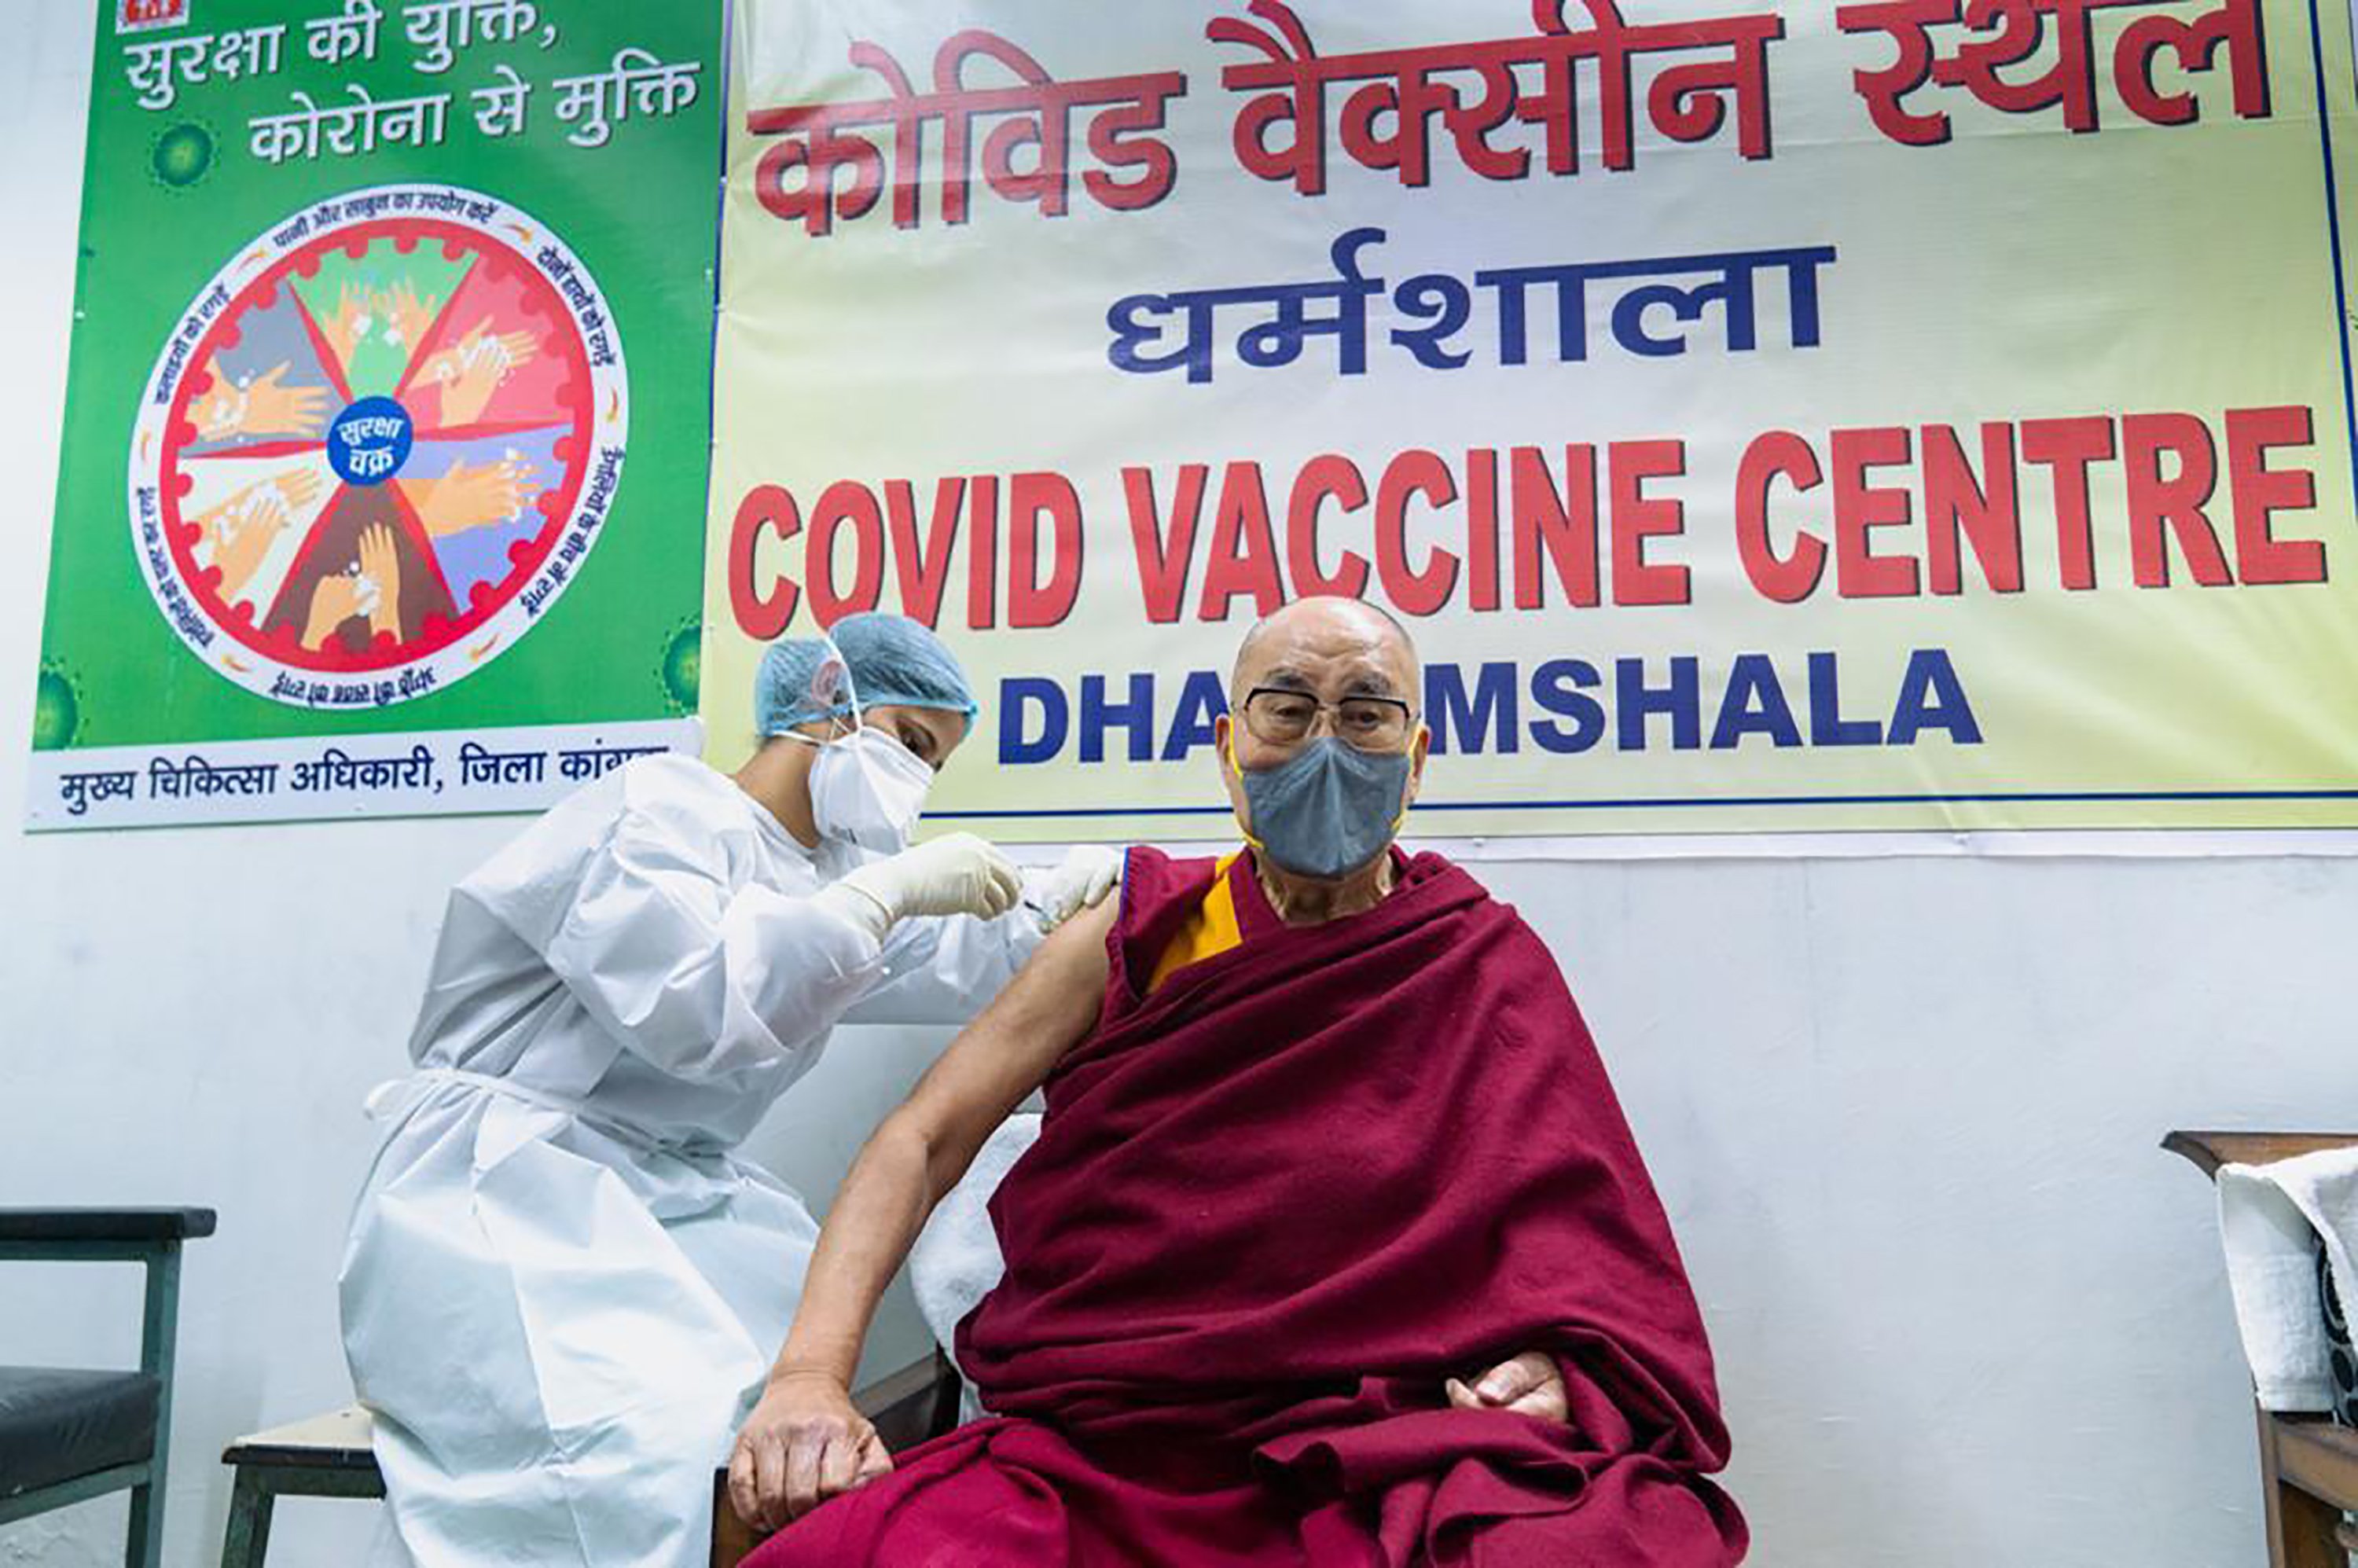 Tibetan spiritual leader Dalai Lama receives vaccine